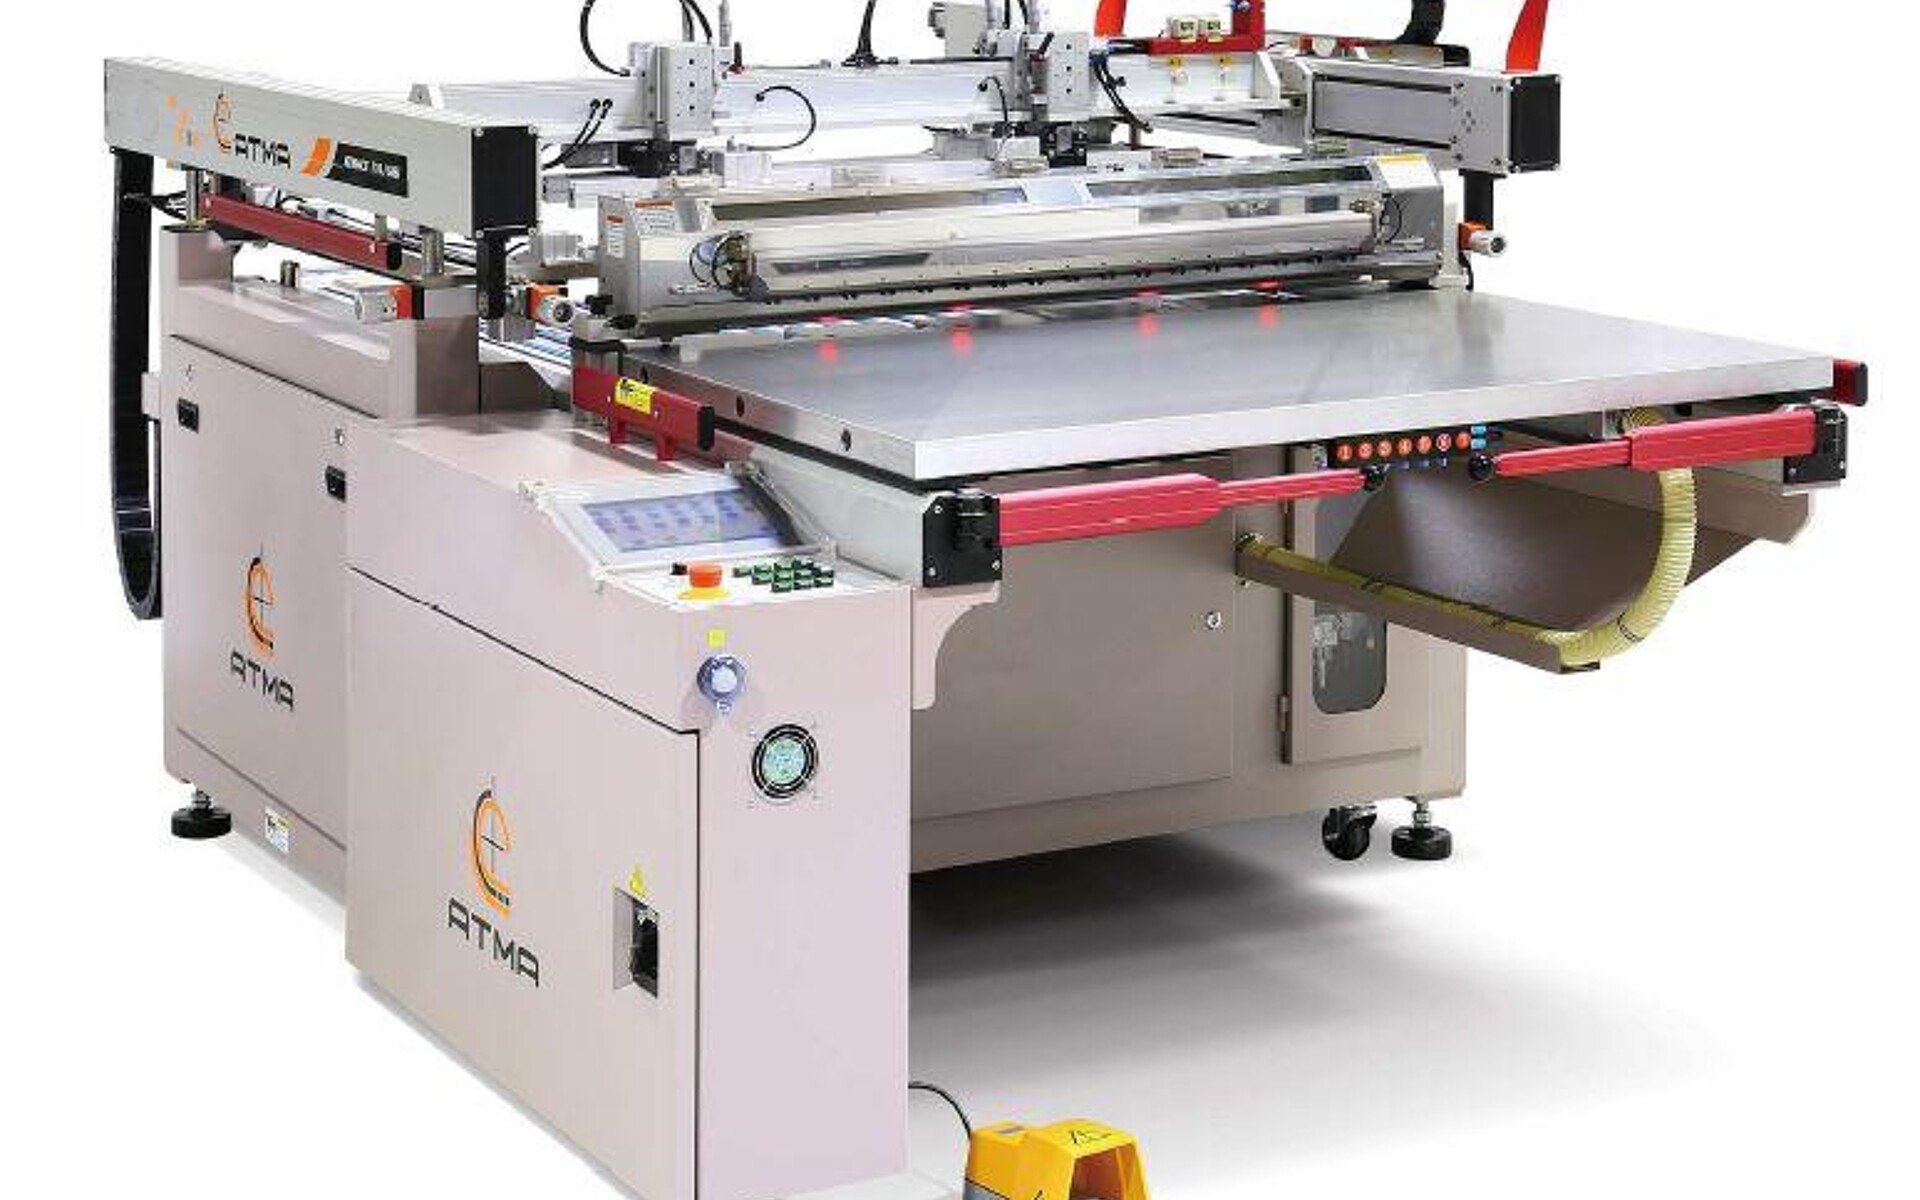 Die dreiviertelautomatische Präzisionssiebdruckmaschine Atmace G6 ist für den Druck auf starren und flexiblen Materialien bis zu einer Stärke von 6 mm geeignet. (Foto: ESC)